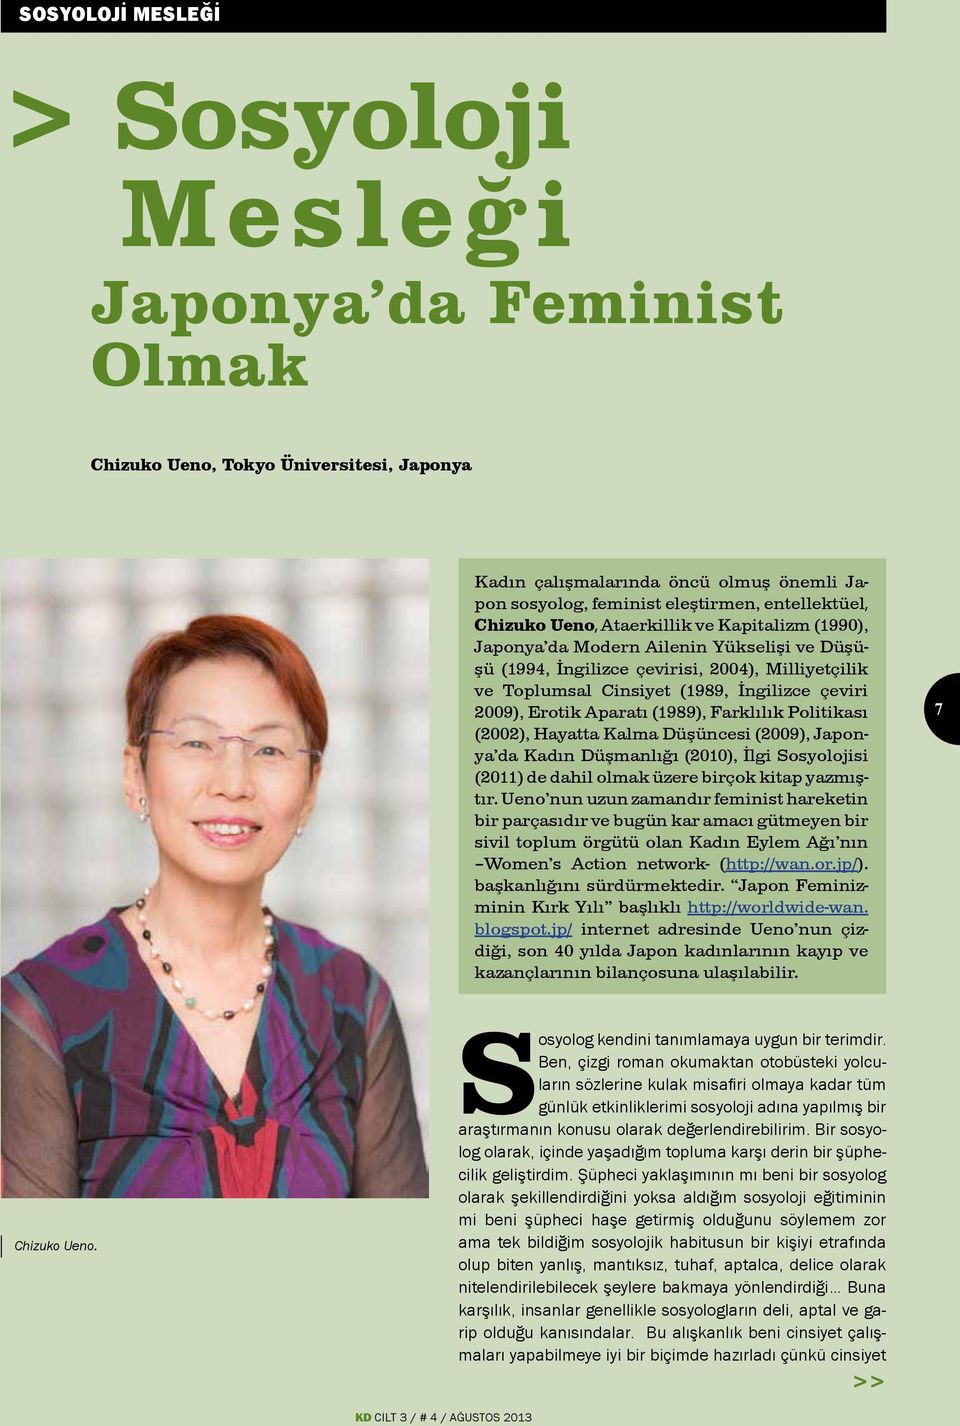 Erotik Aparatı (1989), Farklılık Politikası (2002), Hayatta Kalma Düşüncesi (2009), Japonya da Kadın Düşmanlığı (2010), İlgi Sosyolojisi (2011) de dahil olmak üzere birçok kitap yazmıştır.